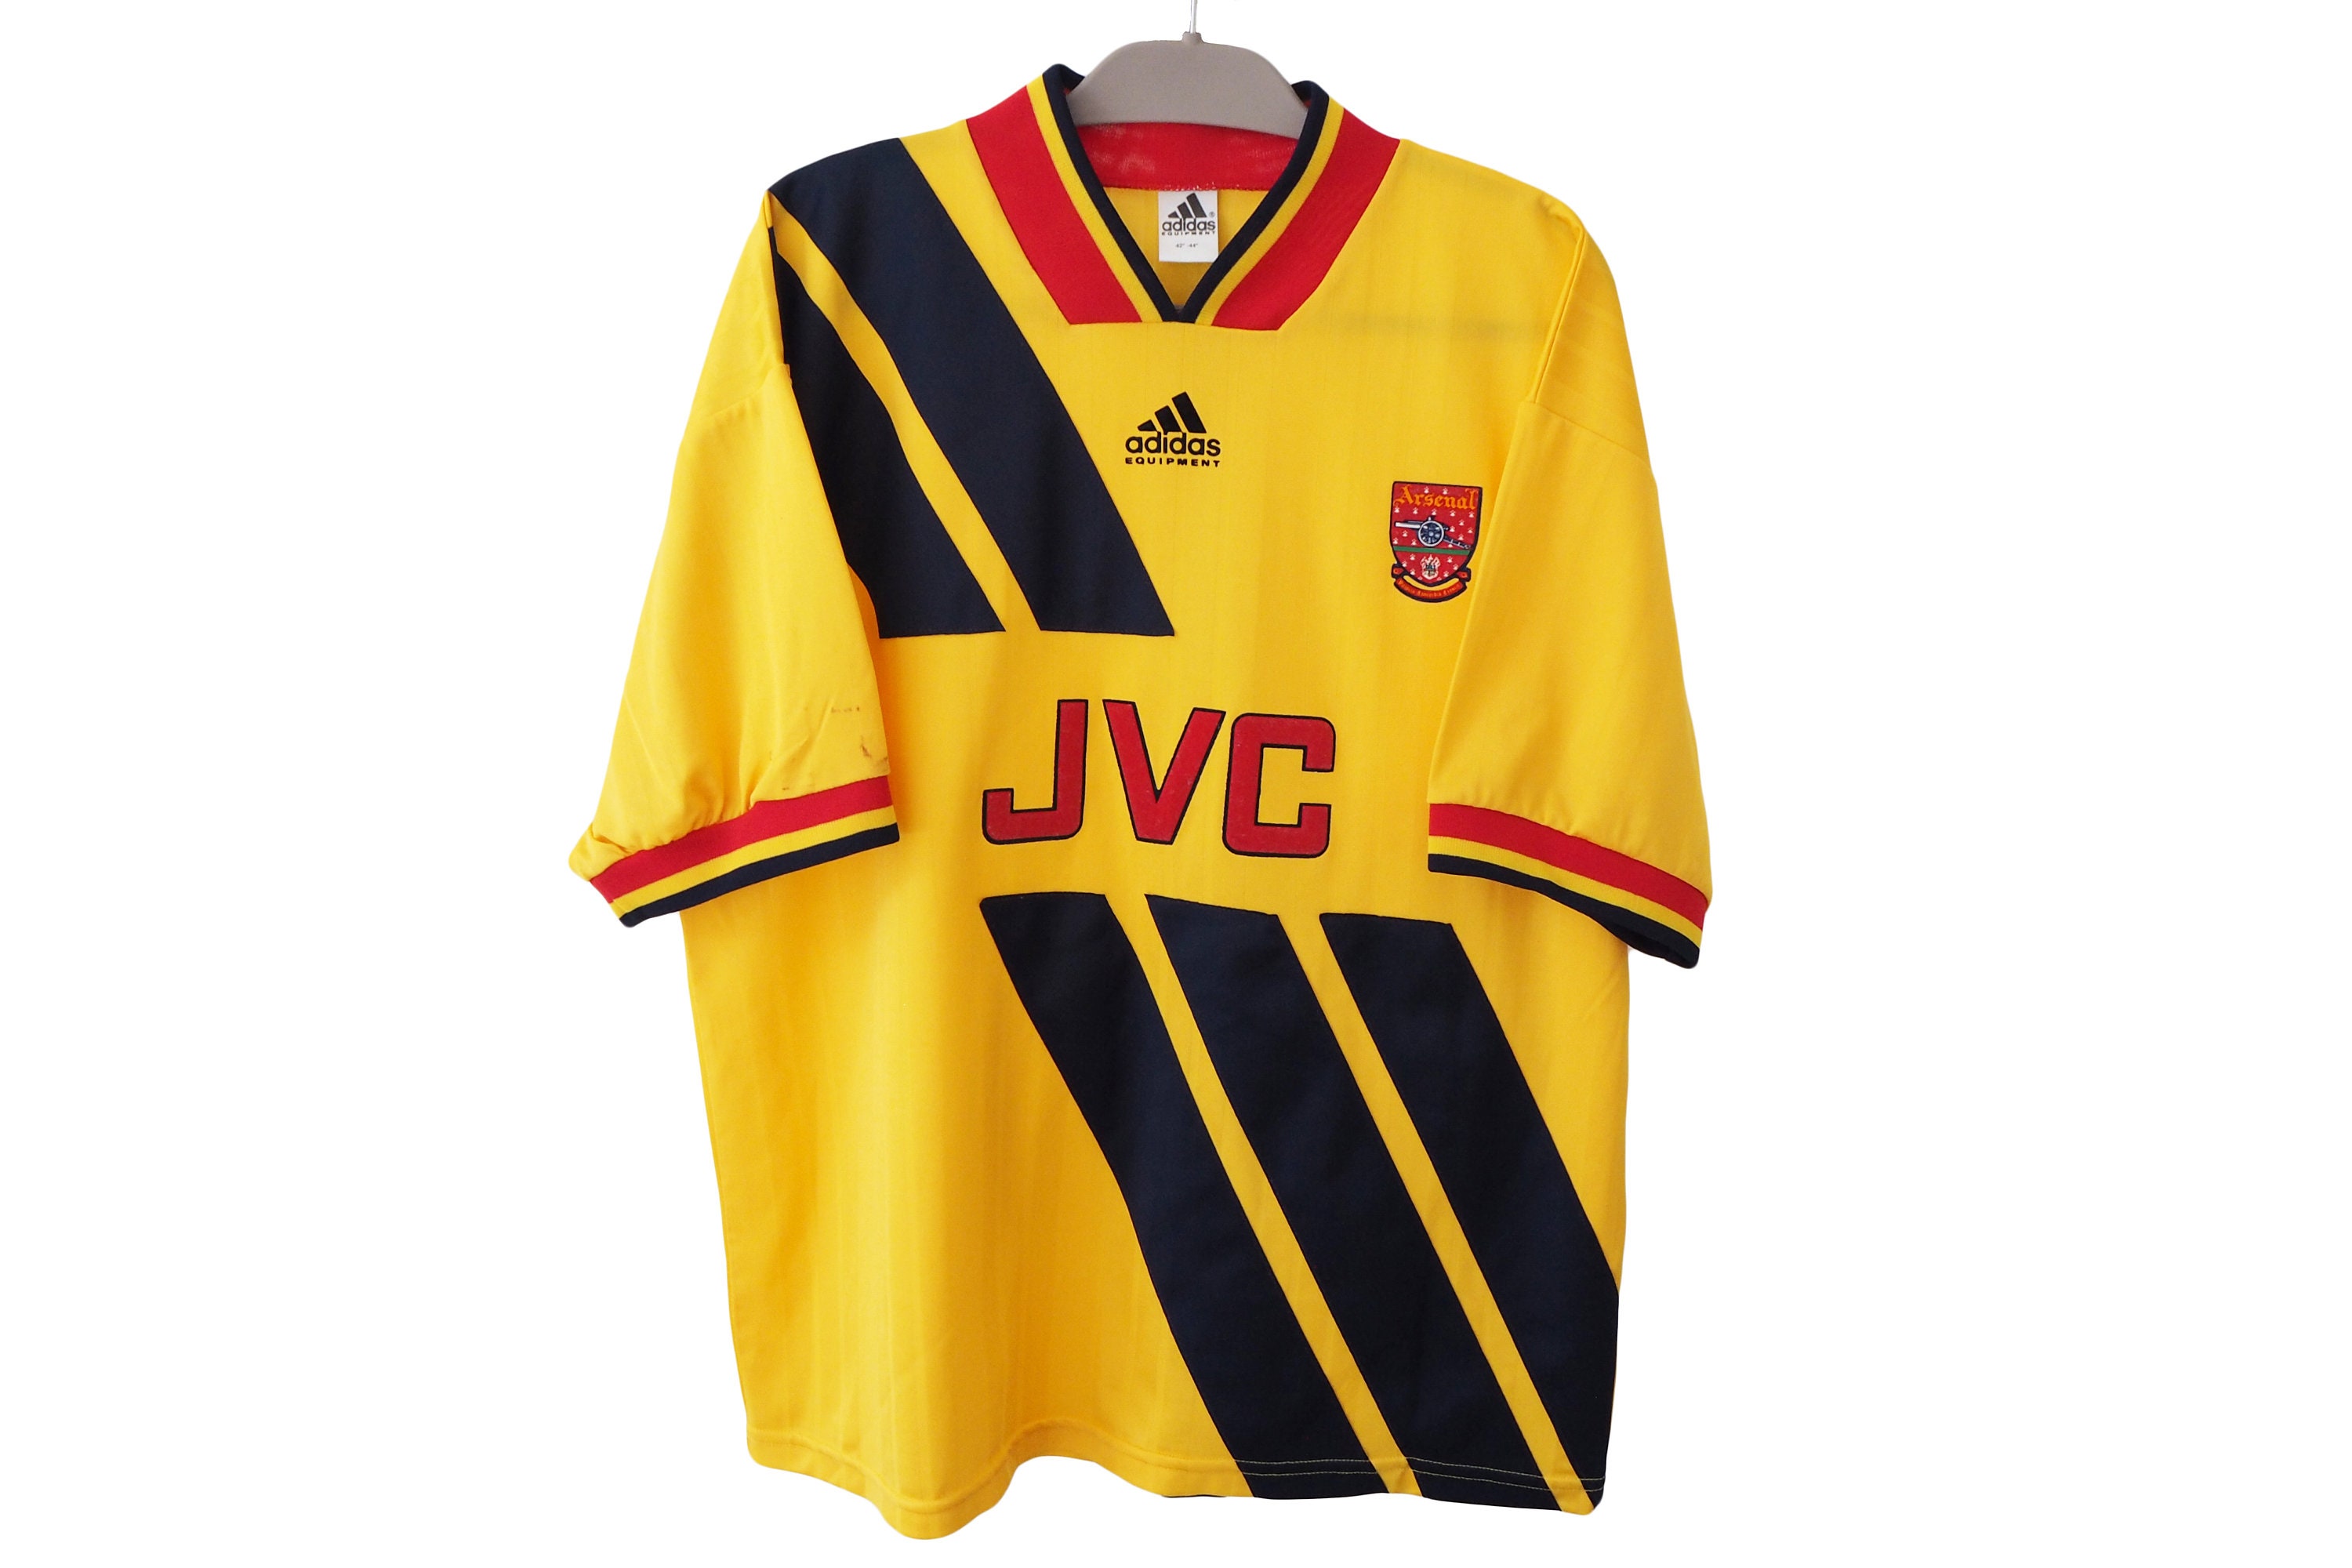 Arsenal x adidas Originals '90s-Inspired Capsule